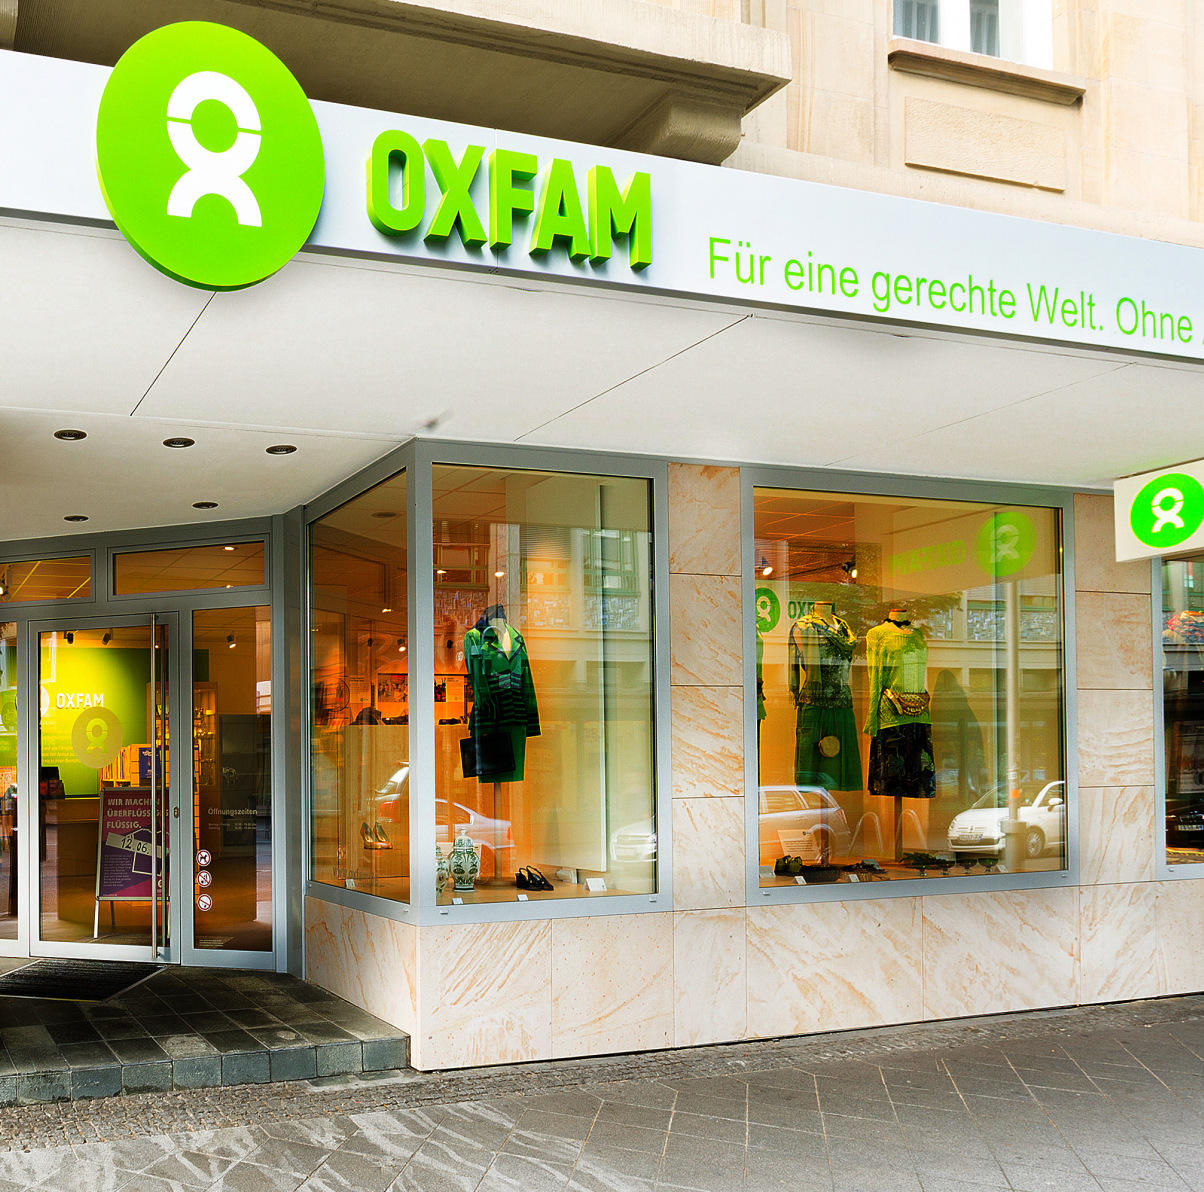 Oxfam Shop Mannheim - Außenansicht